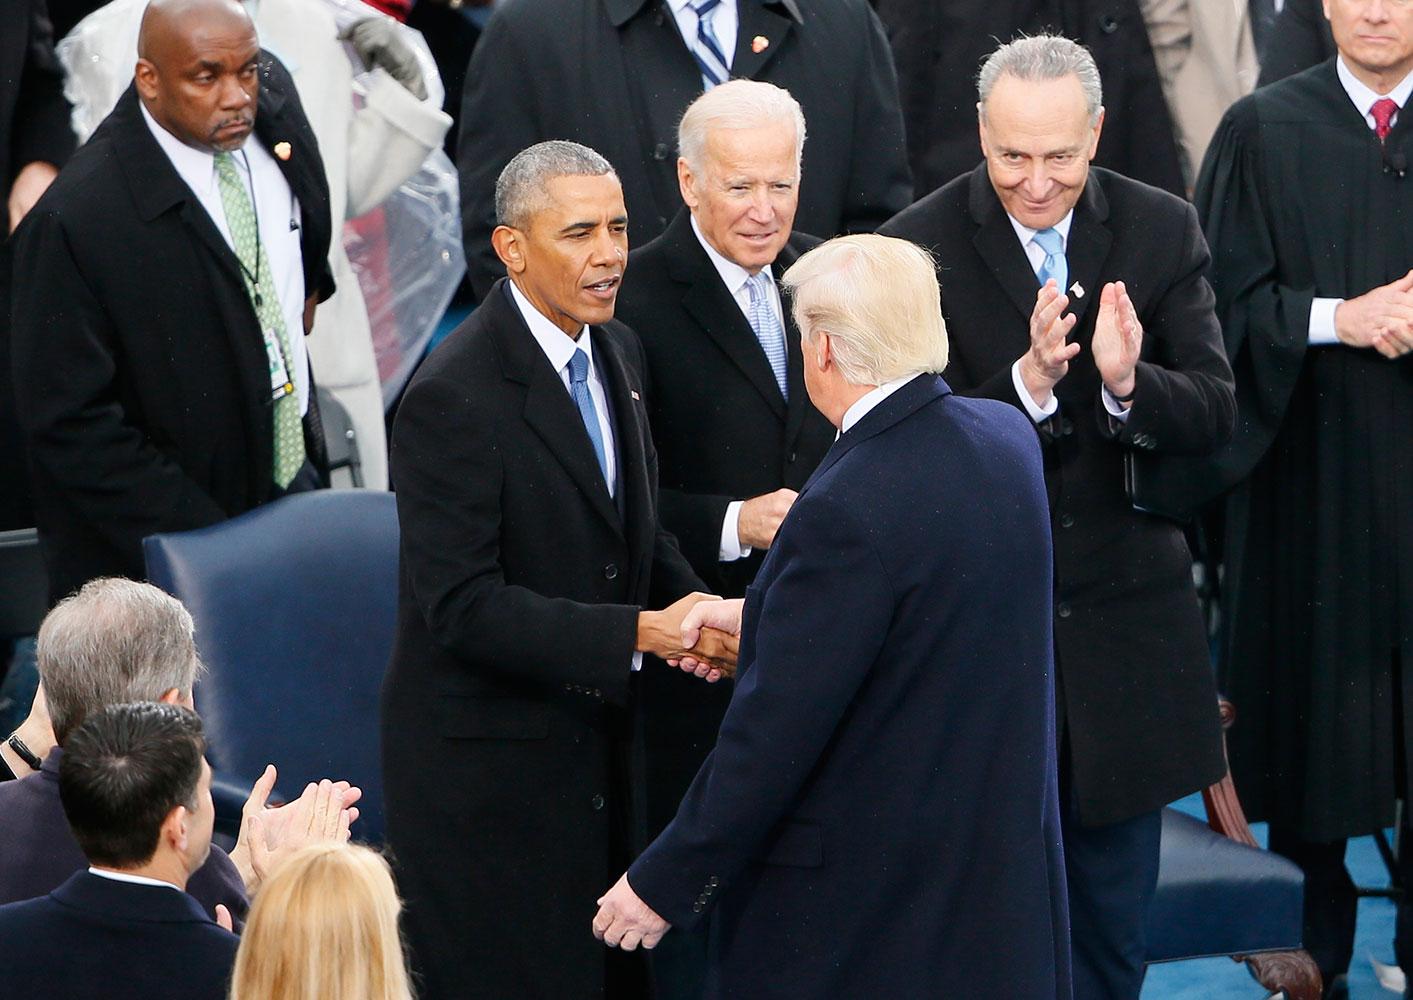 Trump hälsar på Obama när installationsceremonin börjar.